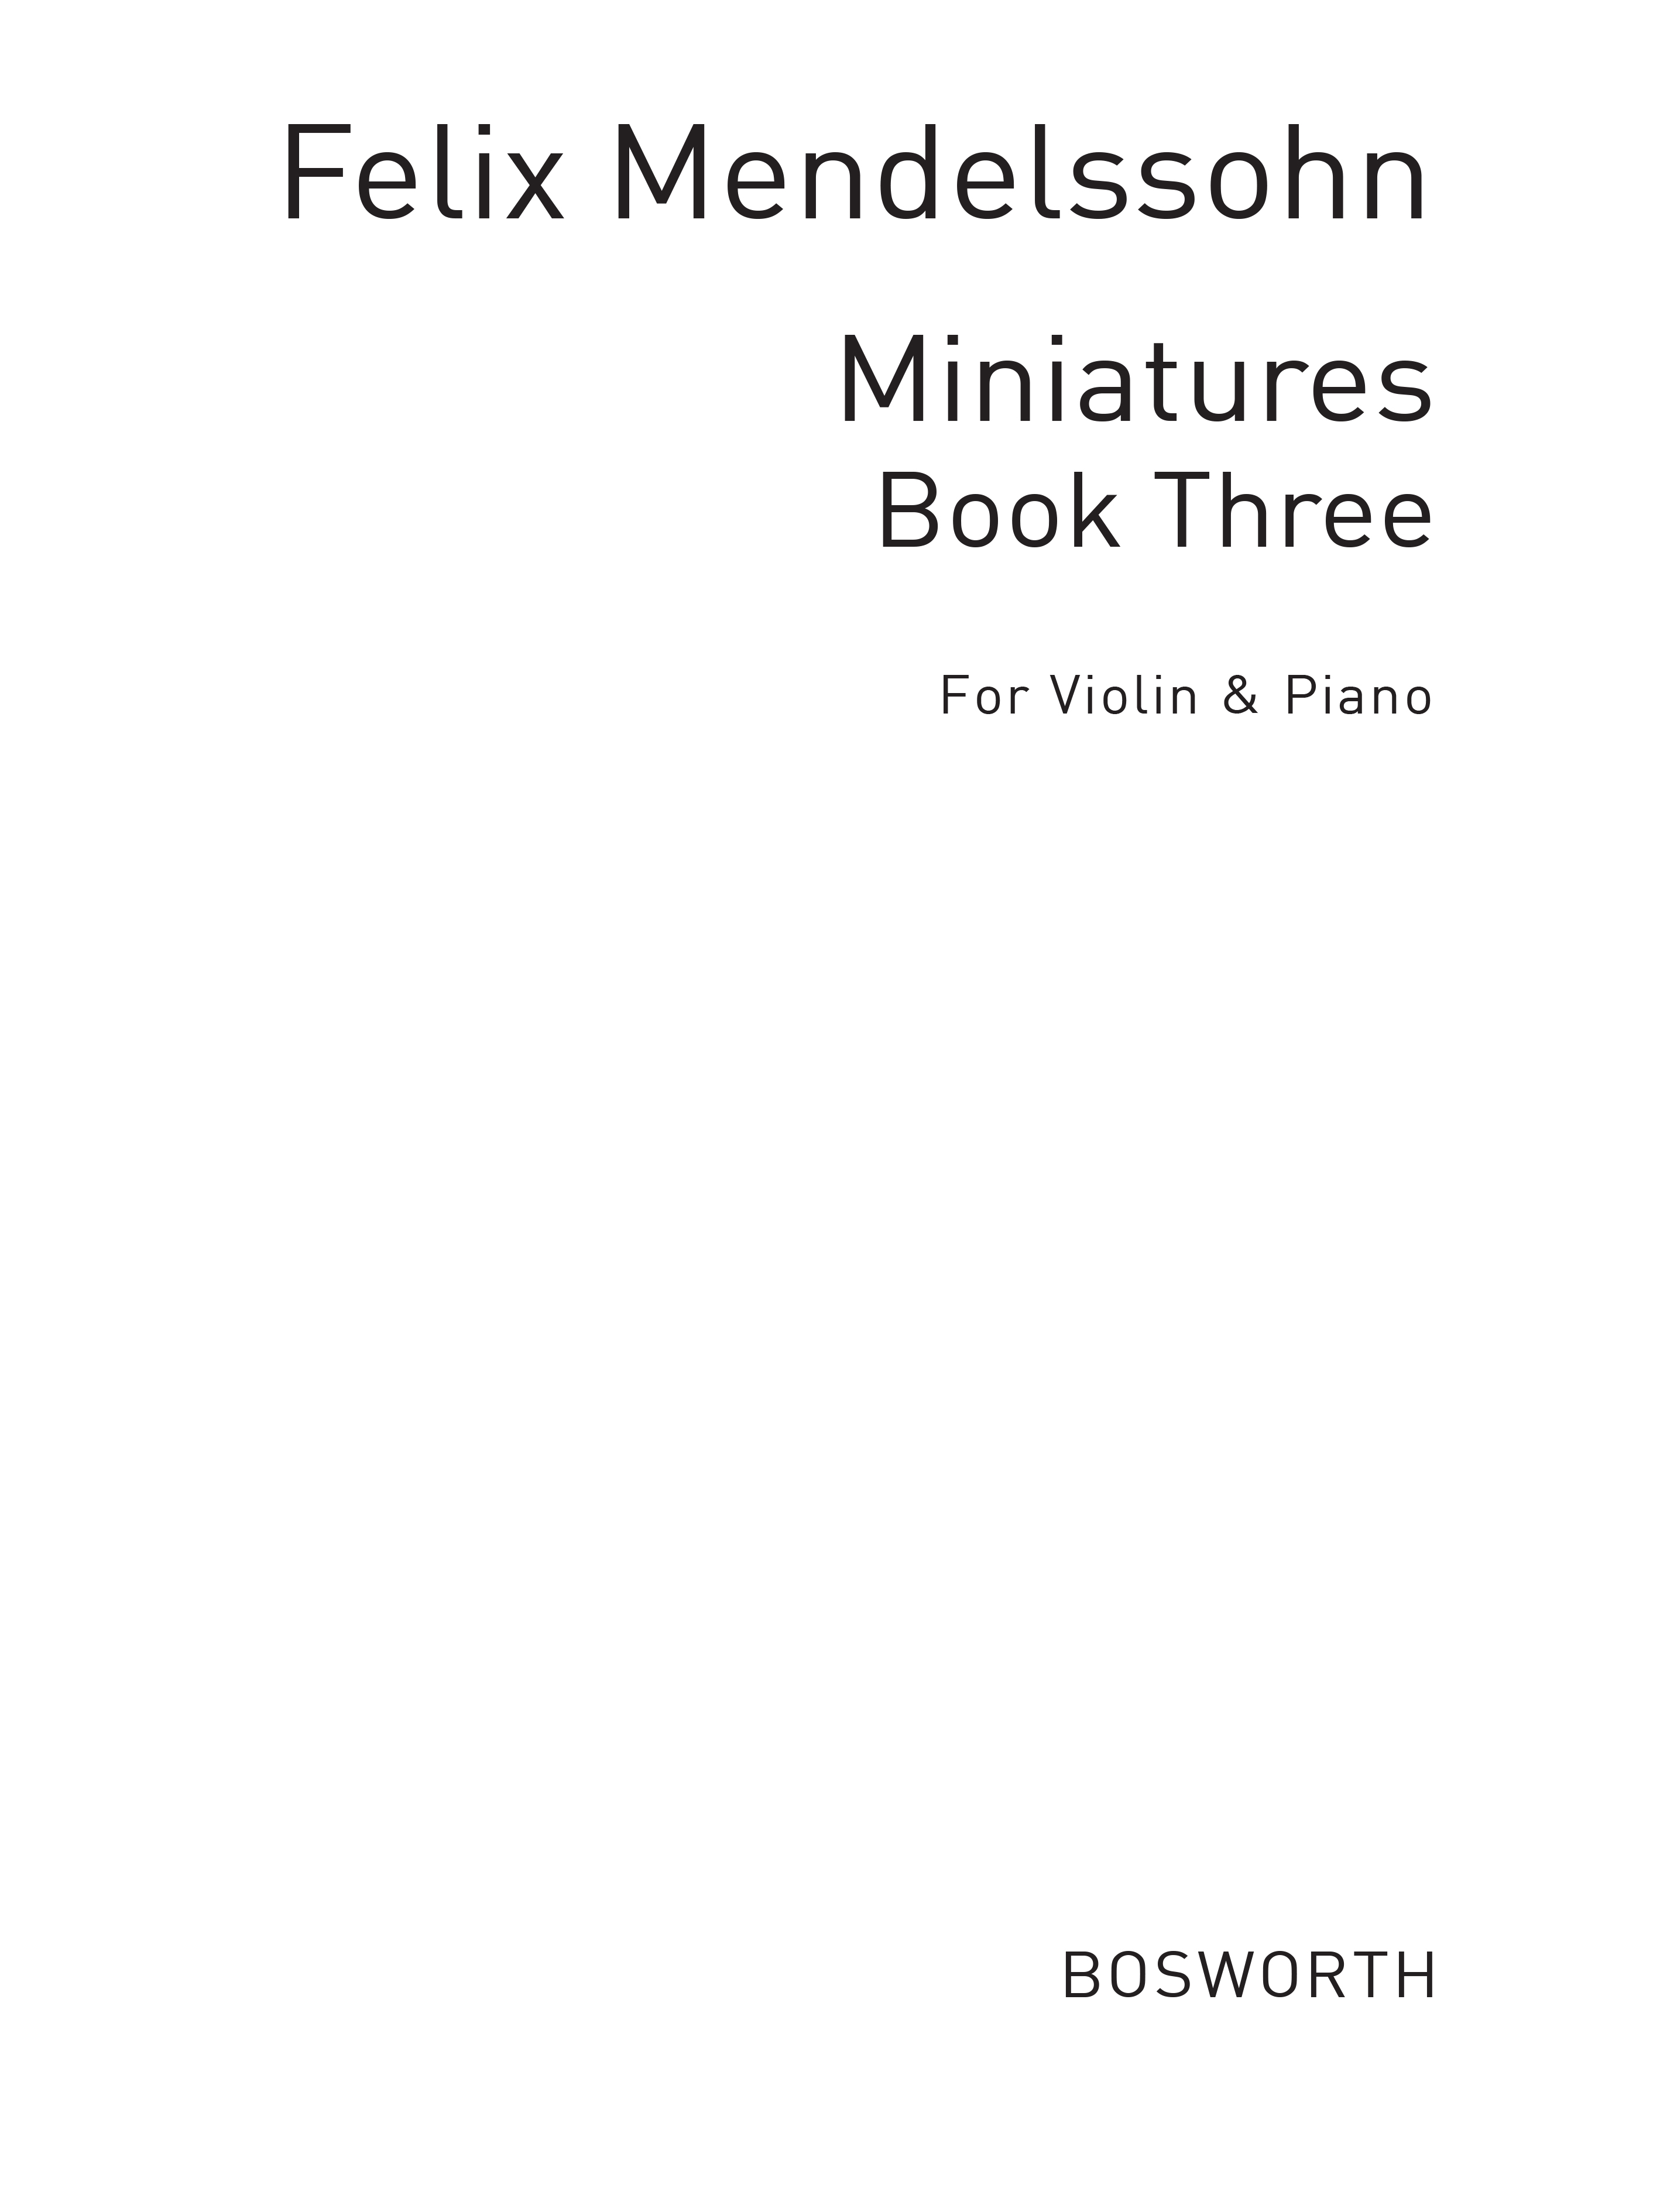 Felix Mendelssohn: Miniatures For Violin And Piano Book 3